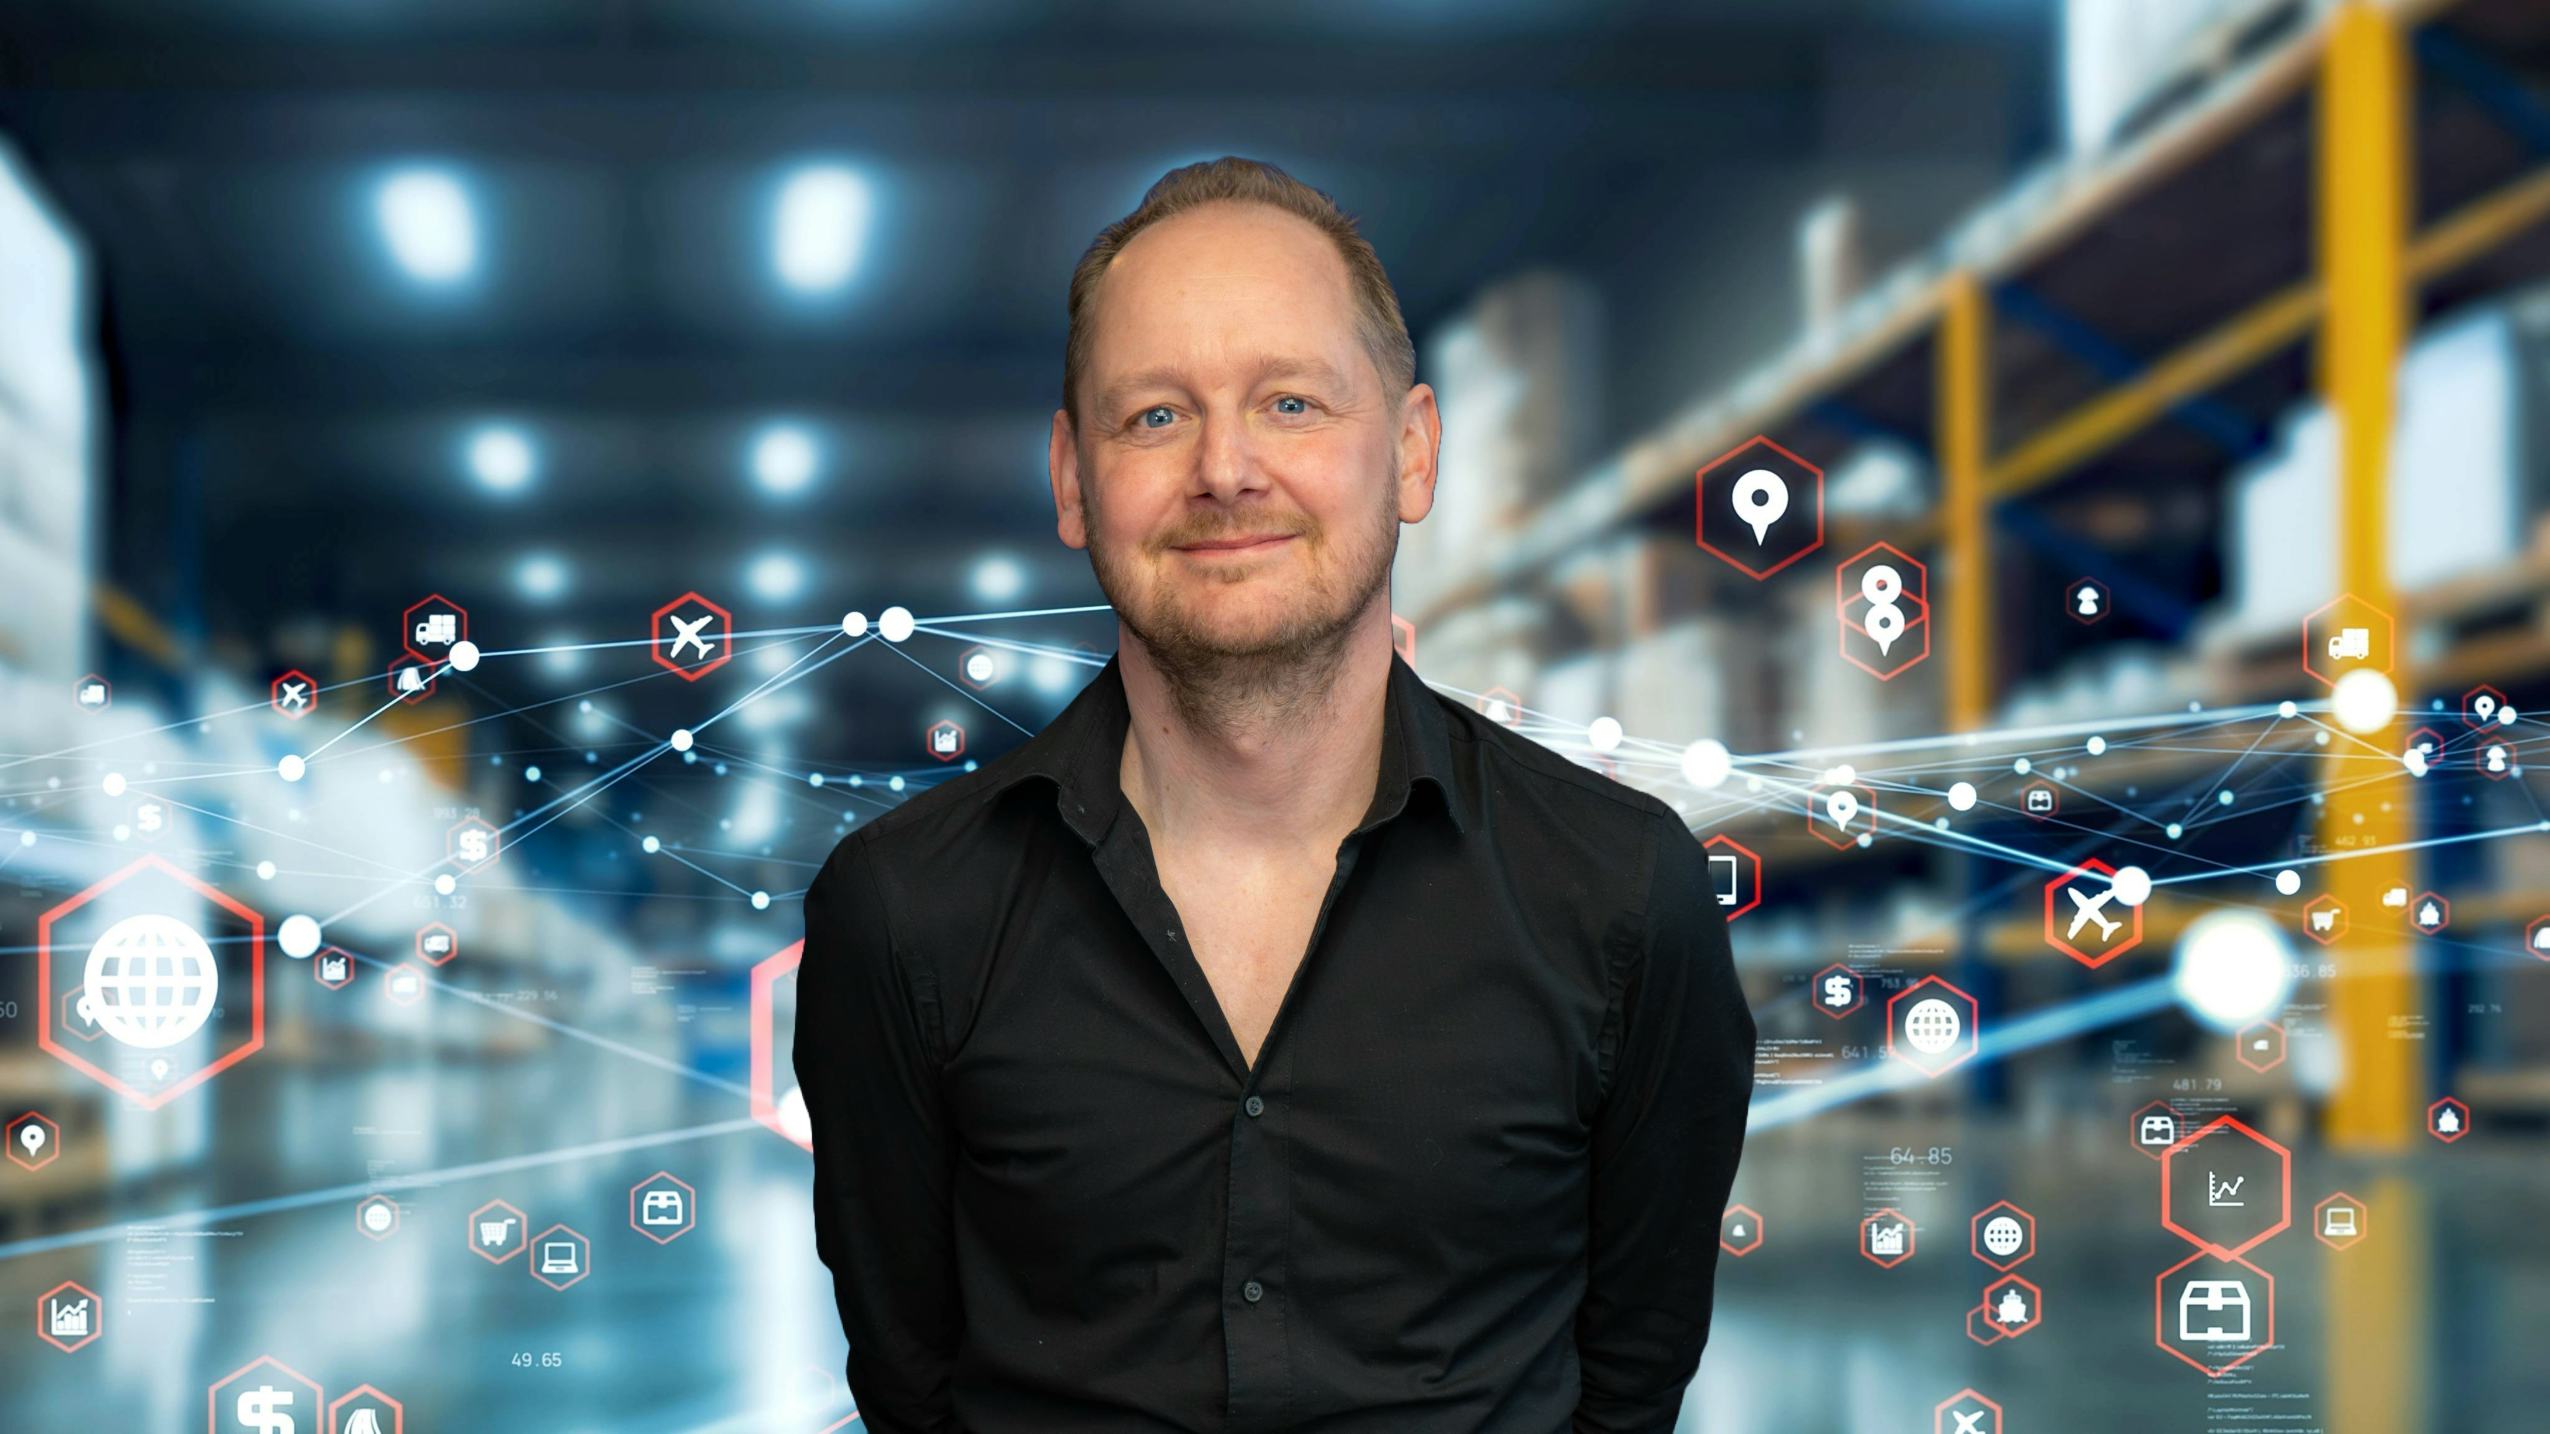 Remco Nieuwenbroek, redacteur van Logistiek.nl, spreekt met behulp van artificial intelligence een videoboodschap in. 